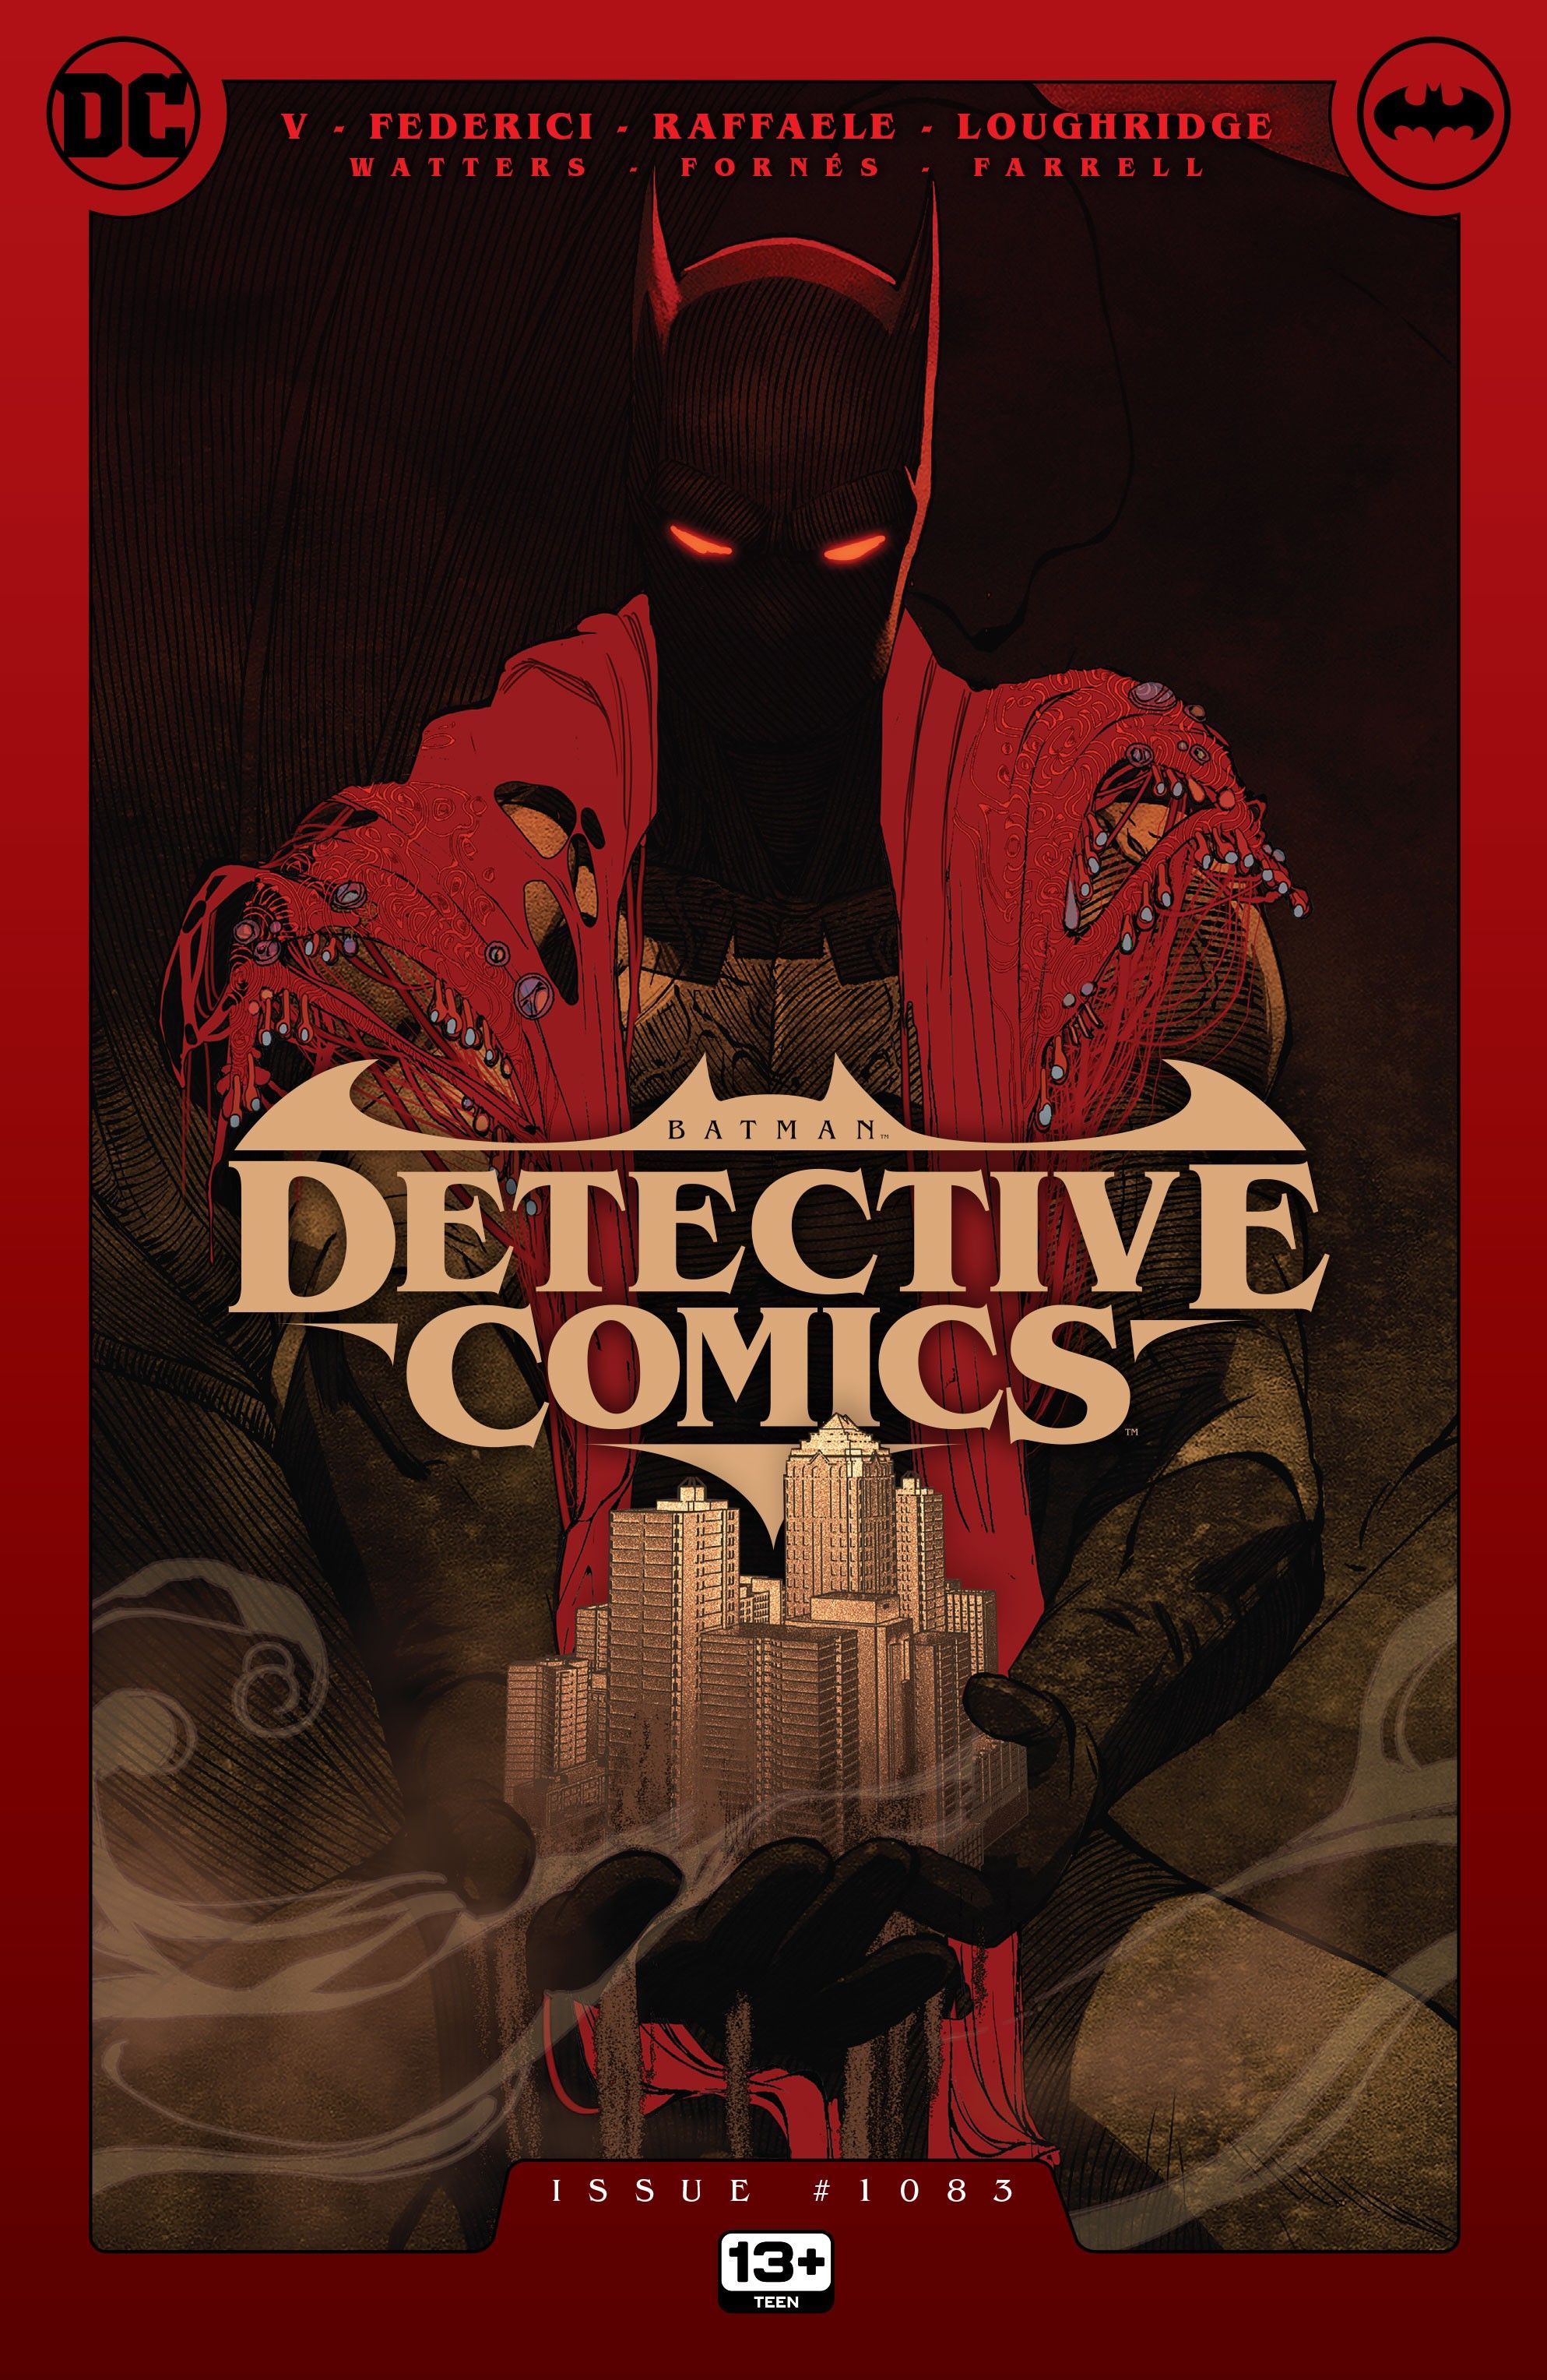 Capa principal da Detective Comics 1083: Uma versão do Batman escondido nas sombras, vestindo um xale vermelho e segurando uma cidade de areia nas mãos.